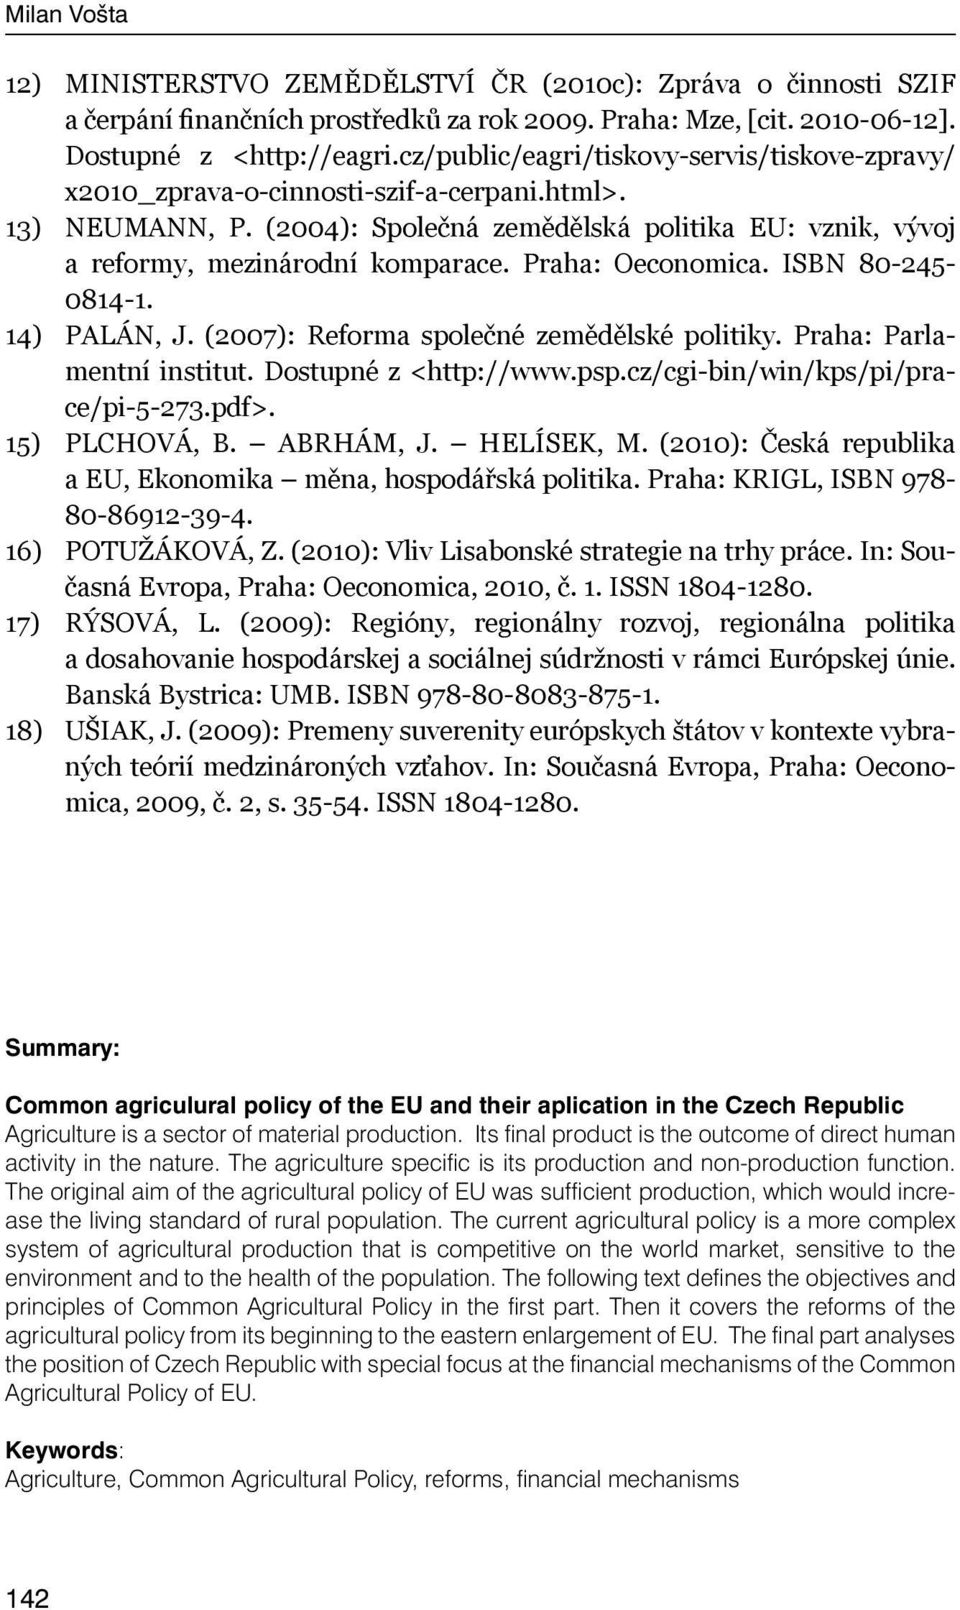 Praha: Oeconomica. ISBN 80-245- 0814-1. 14) PALÁN, J. (2007): Reforma společné zemědělské politiky. Praha: Parlamentní institut. Dostupné z <http://www.psp.cz/cgi-bin/win/kps/pi/prace/pi-5-273.pdf>.